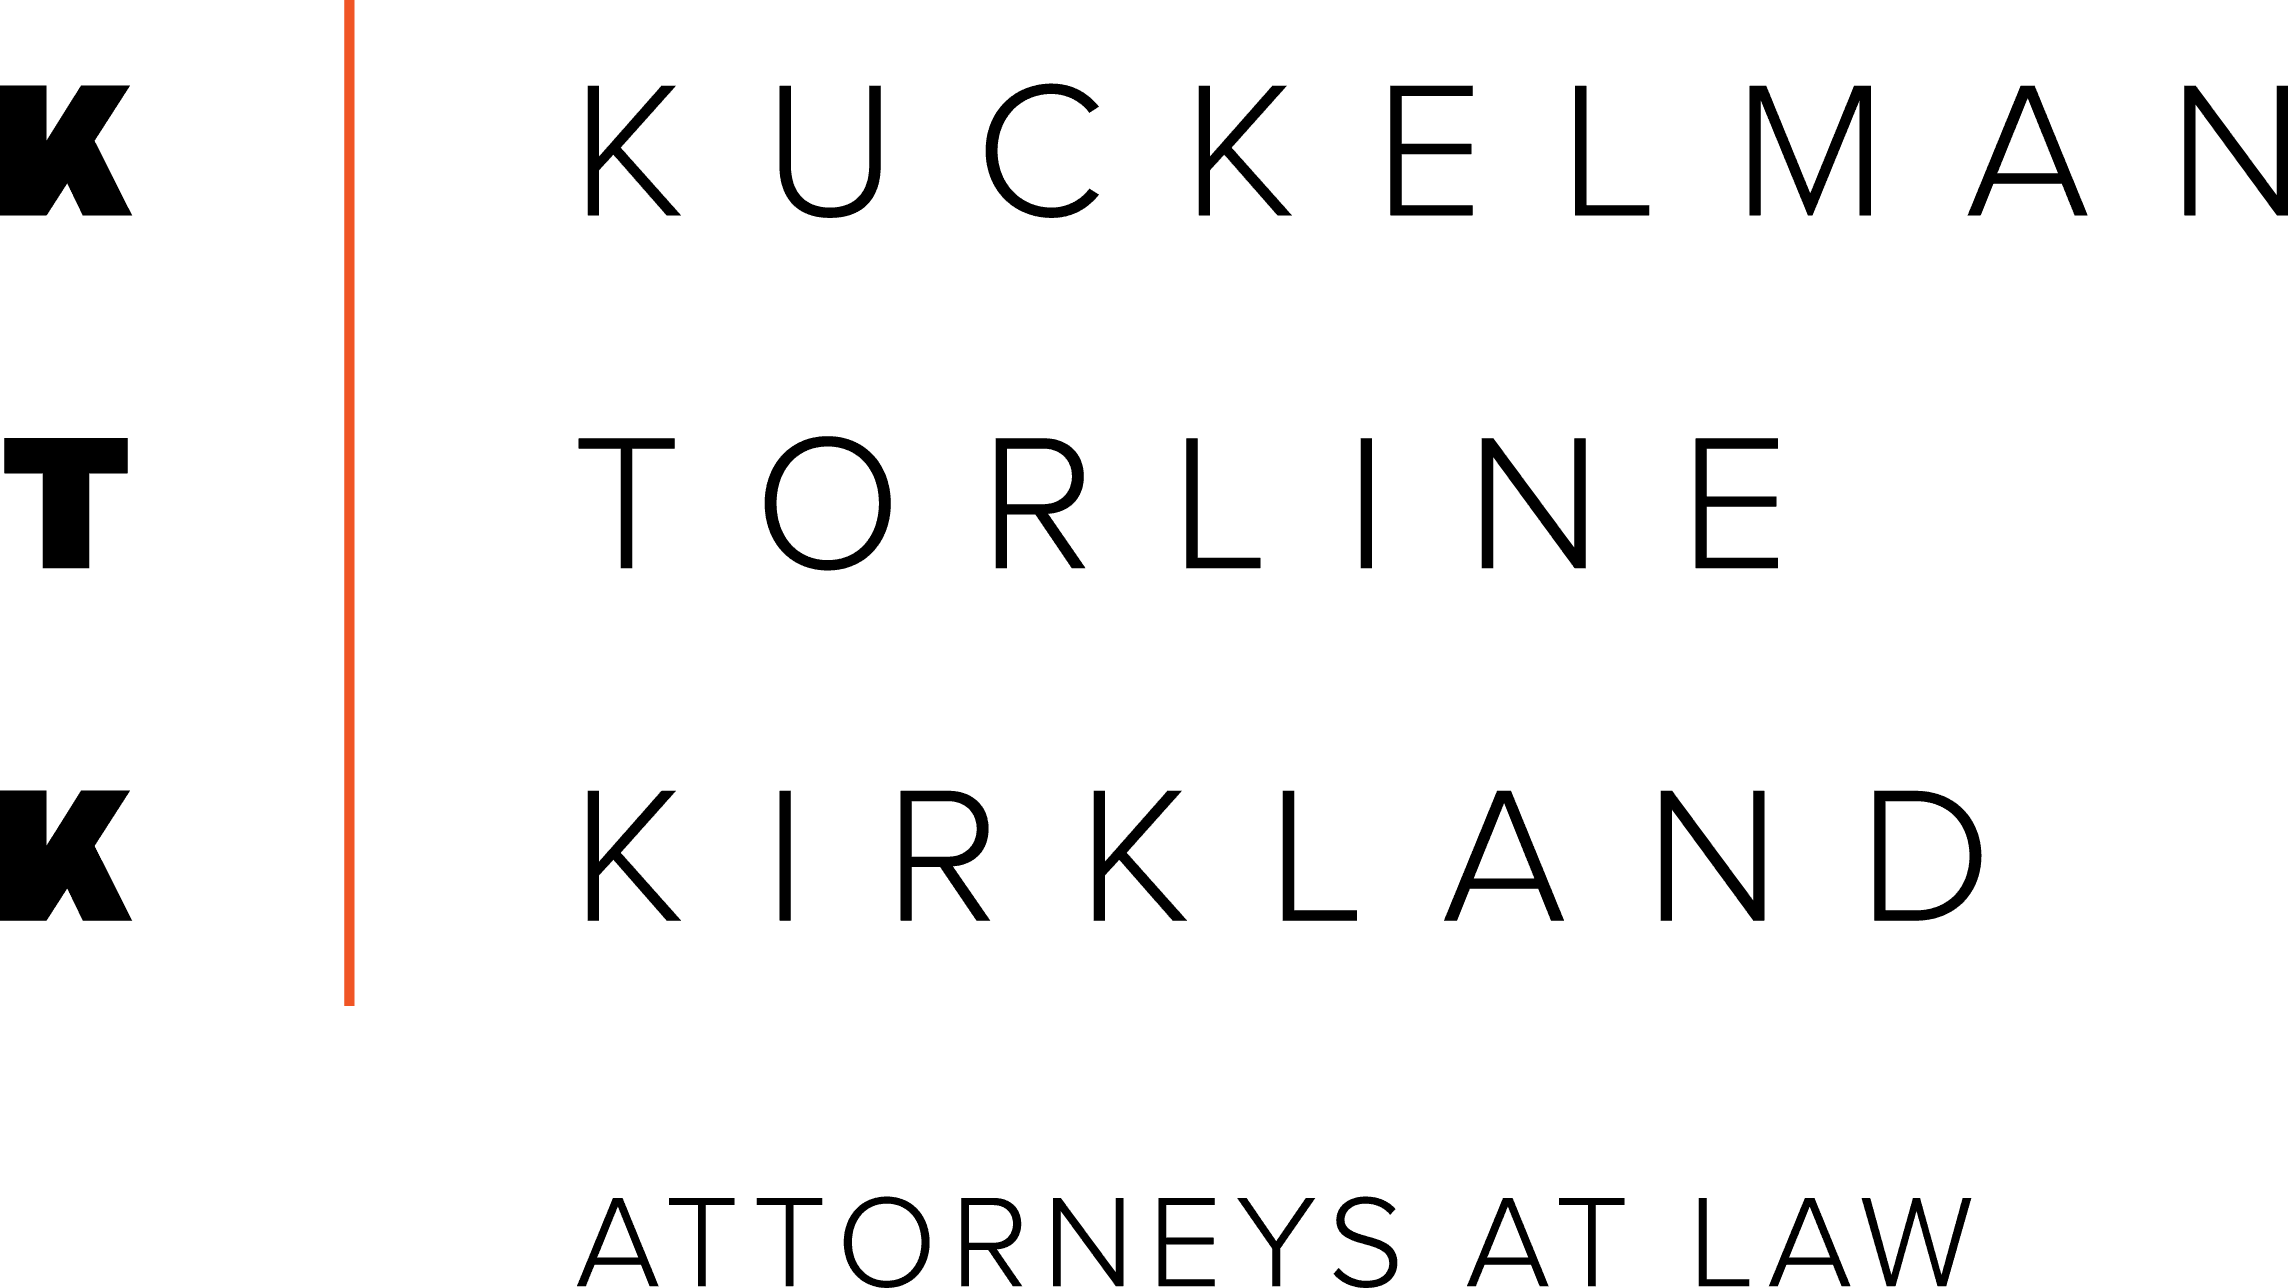 Kuckelman Torline Kirkland